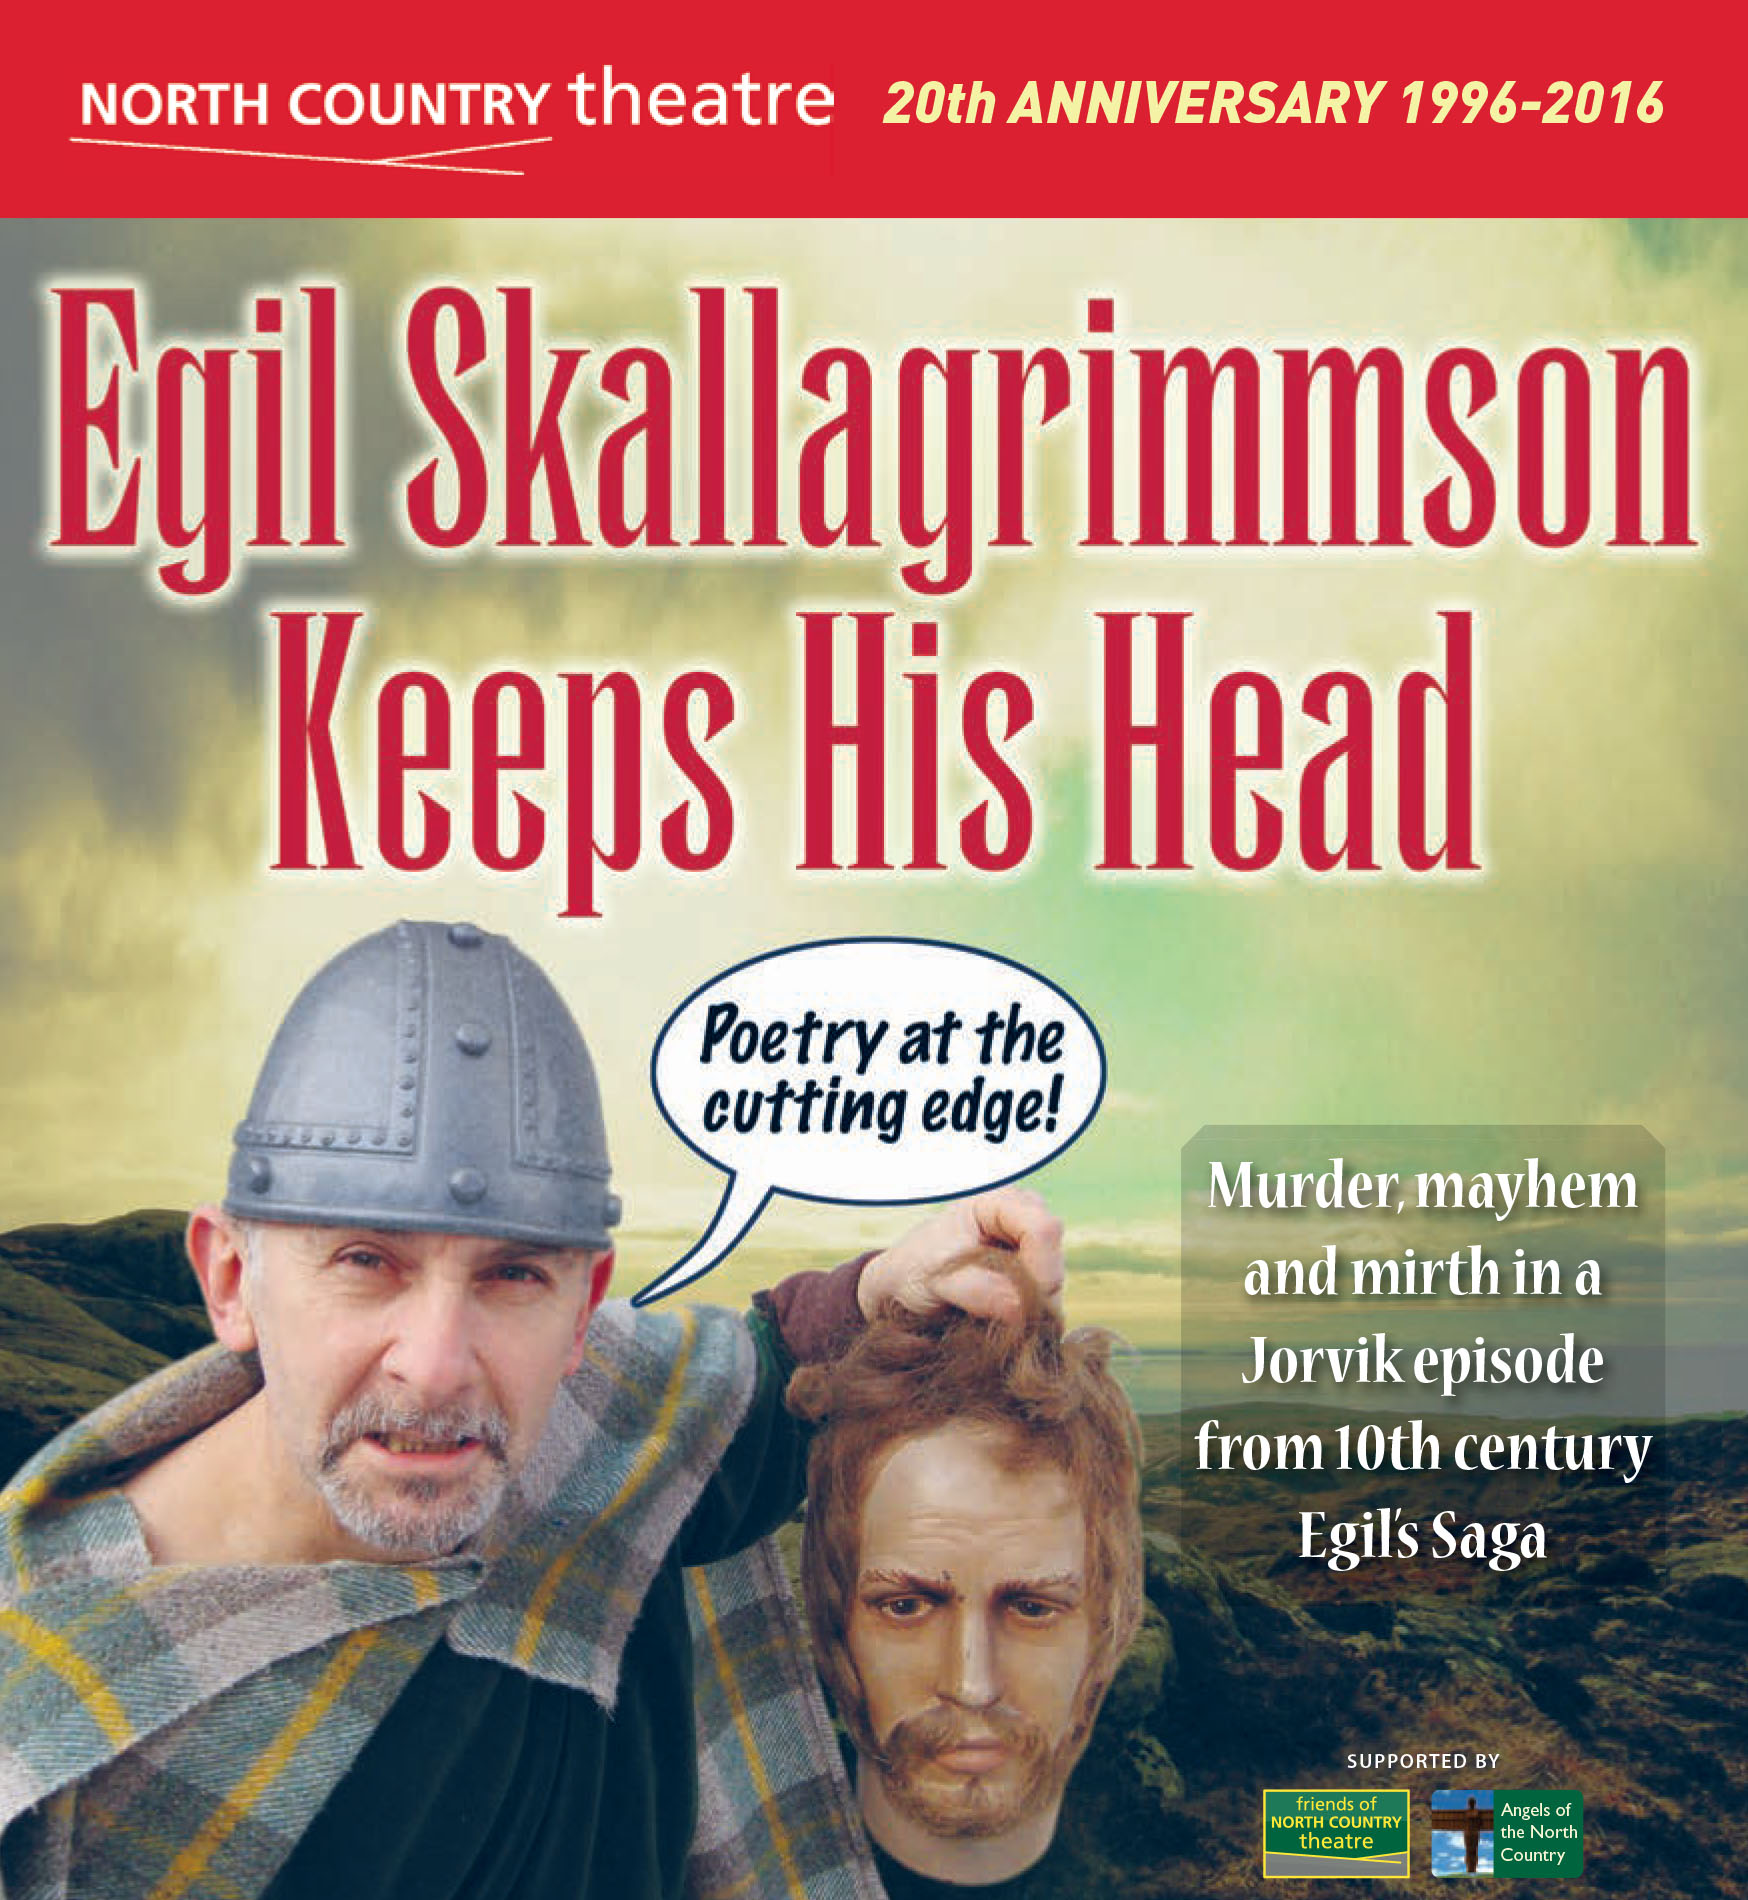 Egil Skallagrimmson Keeps His Head (2016)